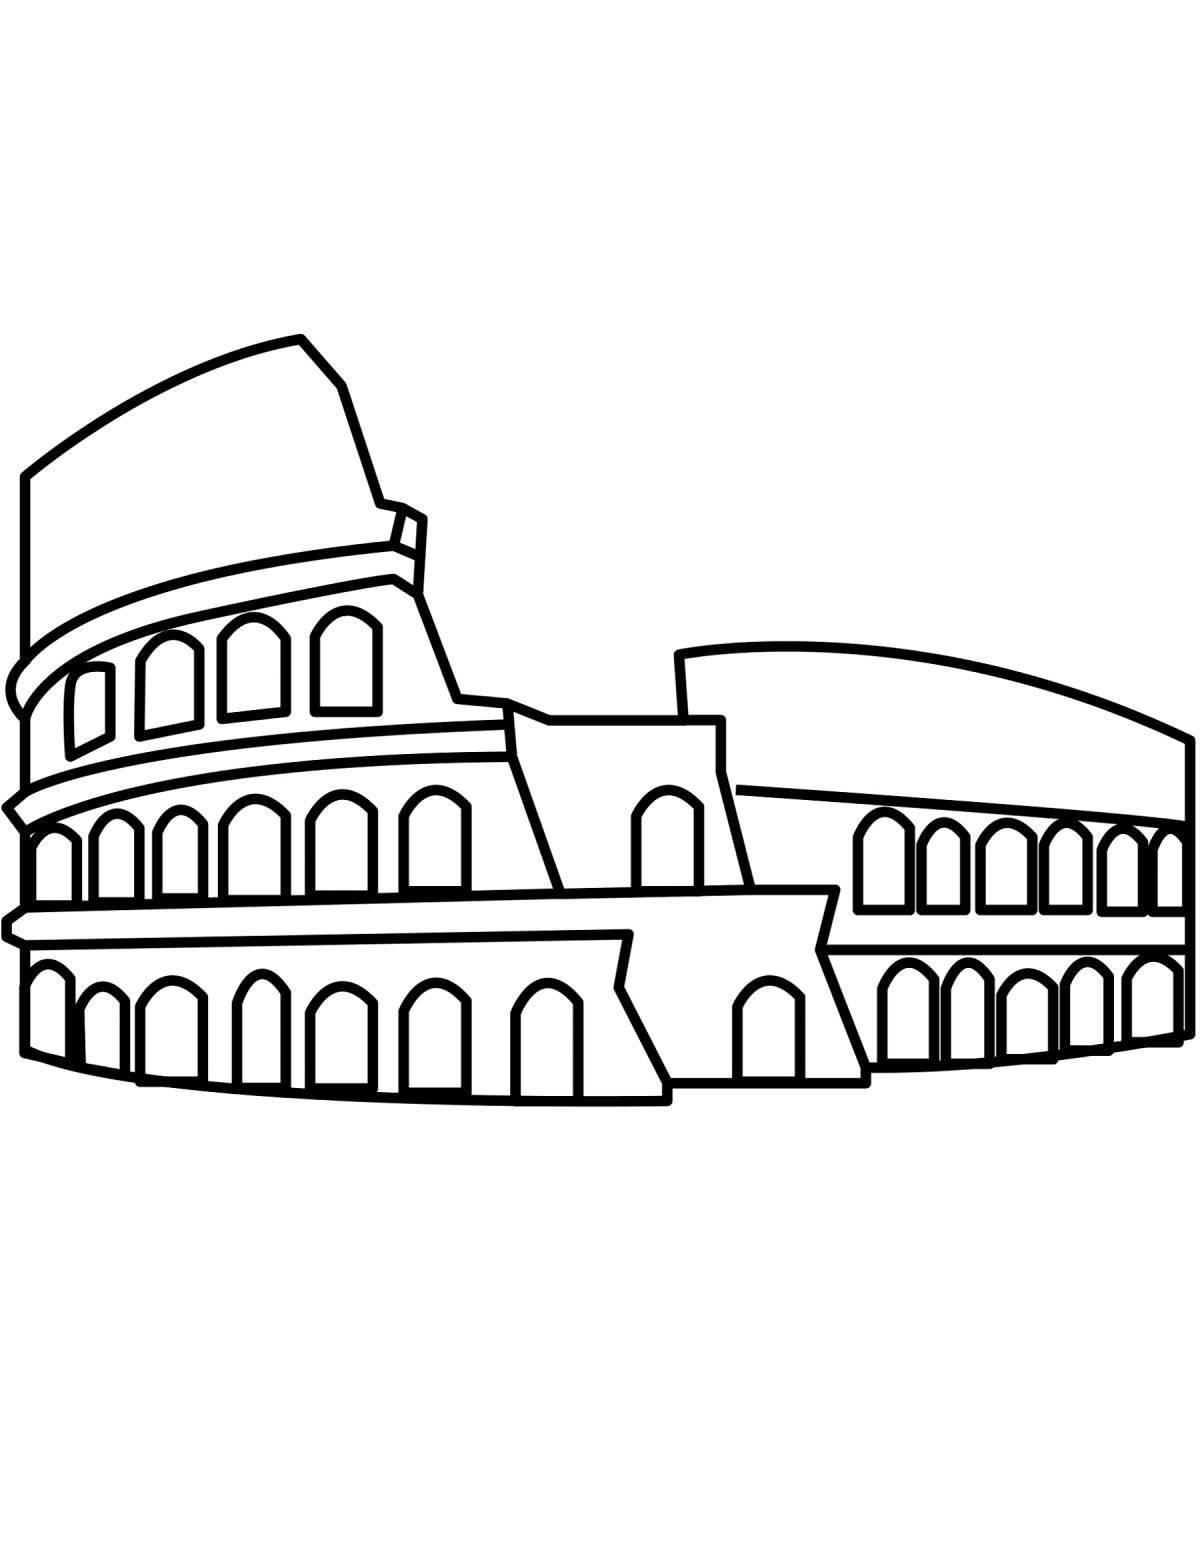 Colosseum in rome #6